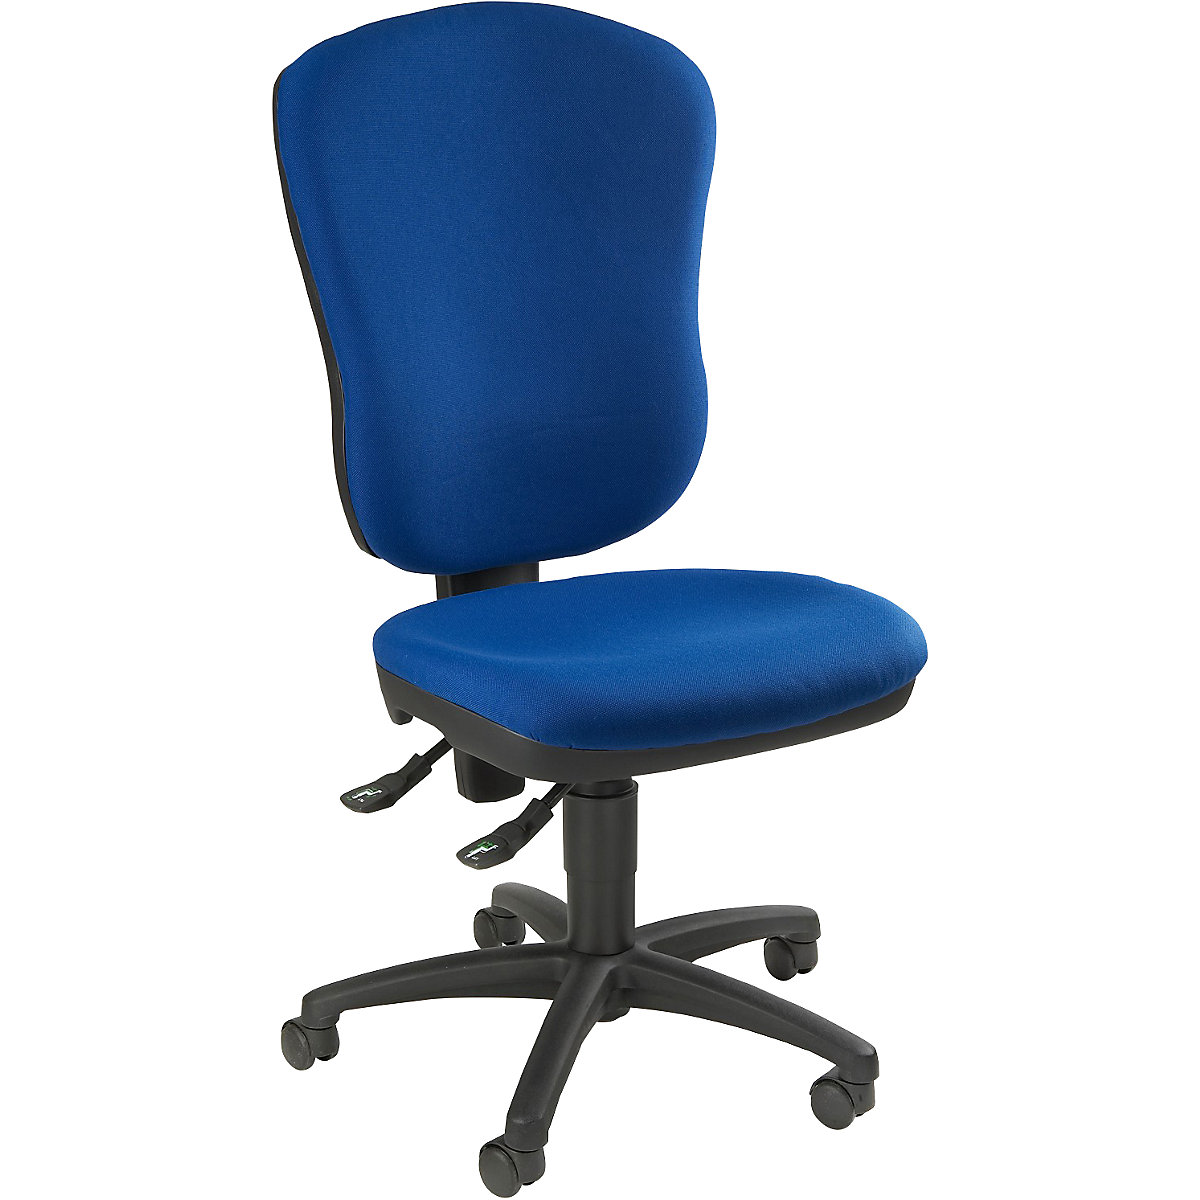 Sedia girevole standard – Topstar, senza braccioli, con sostegno per le vertebre lombari, altezza schienale 570 mm, tessuto blu reale-2